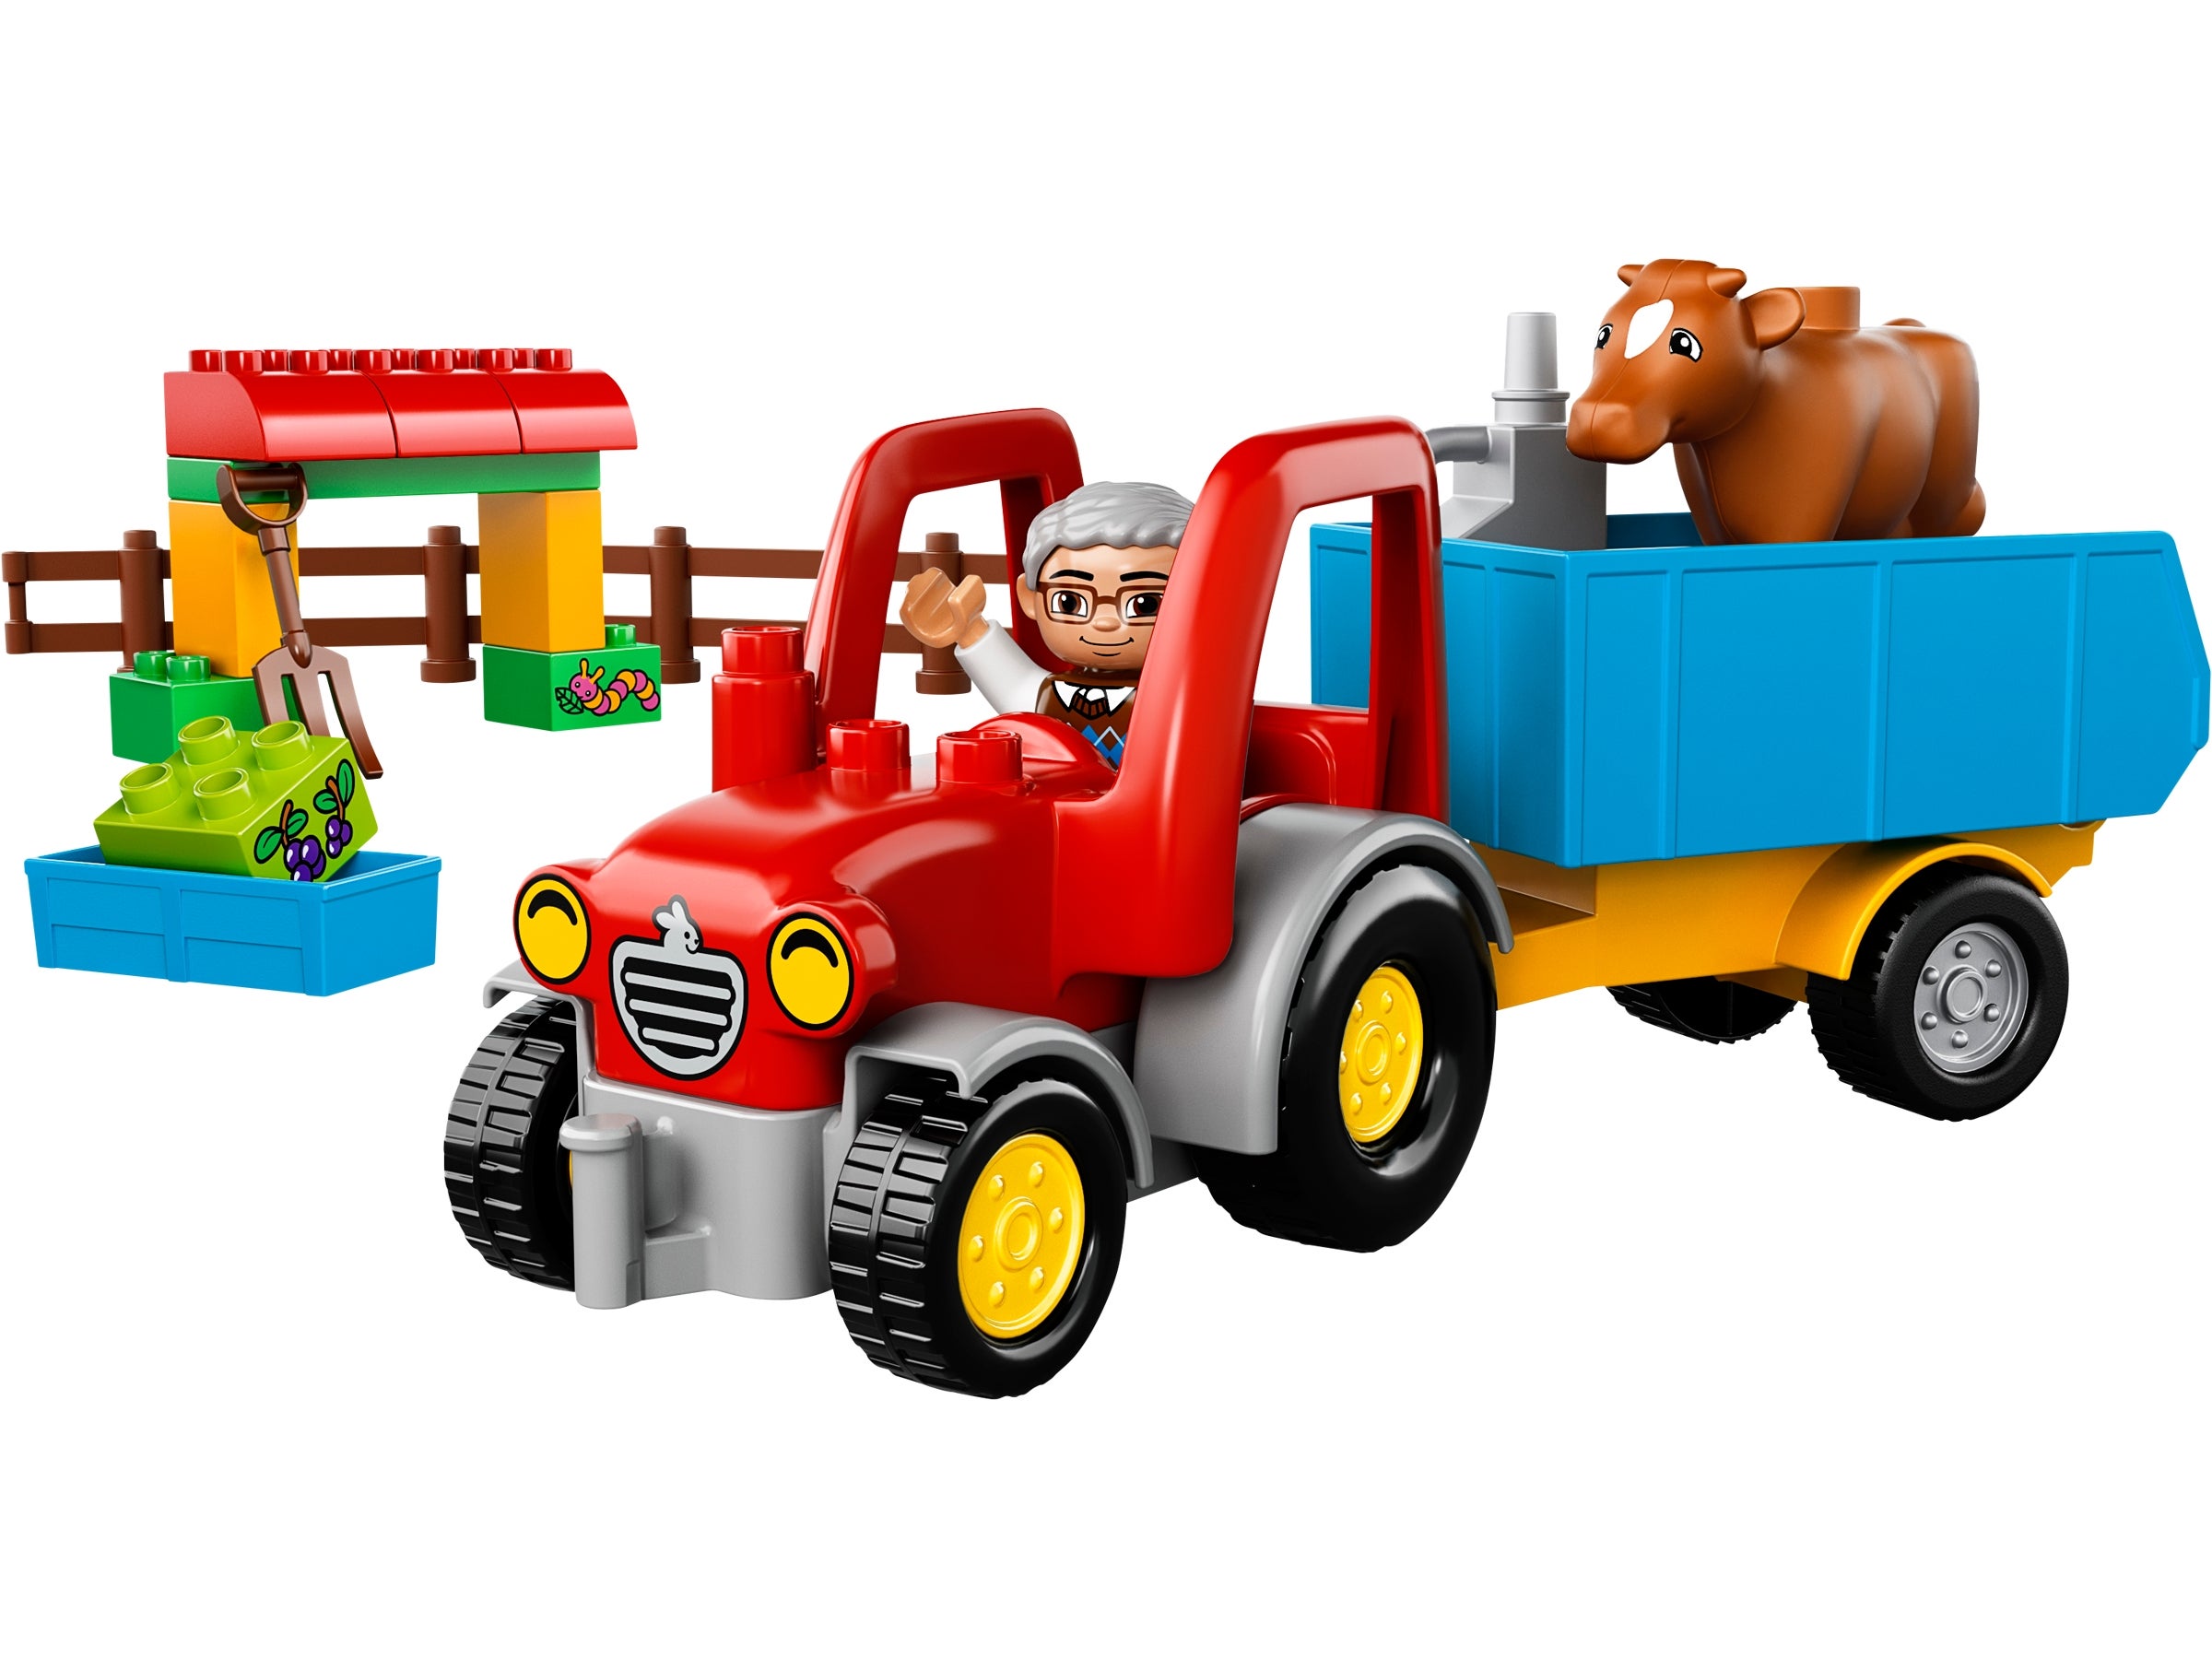 El tractor de la Granja Lego 10524 NUEVO